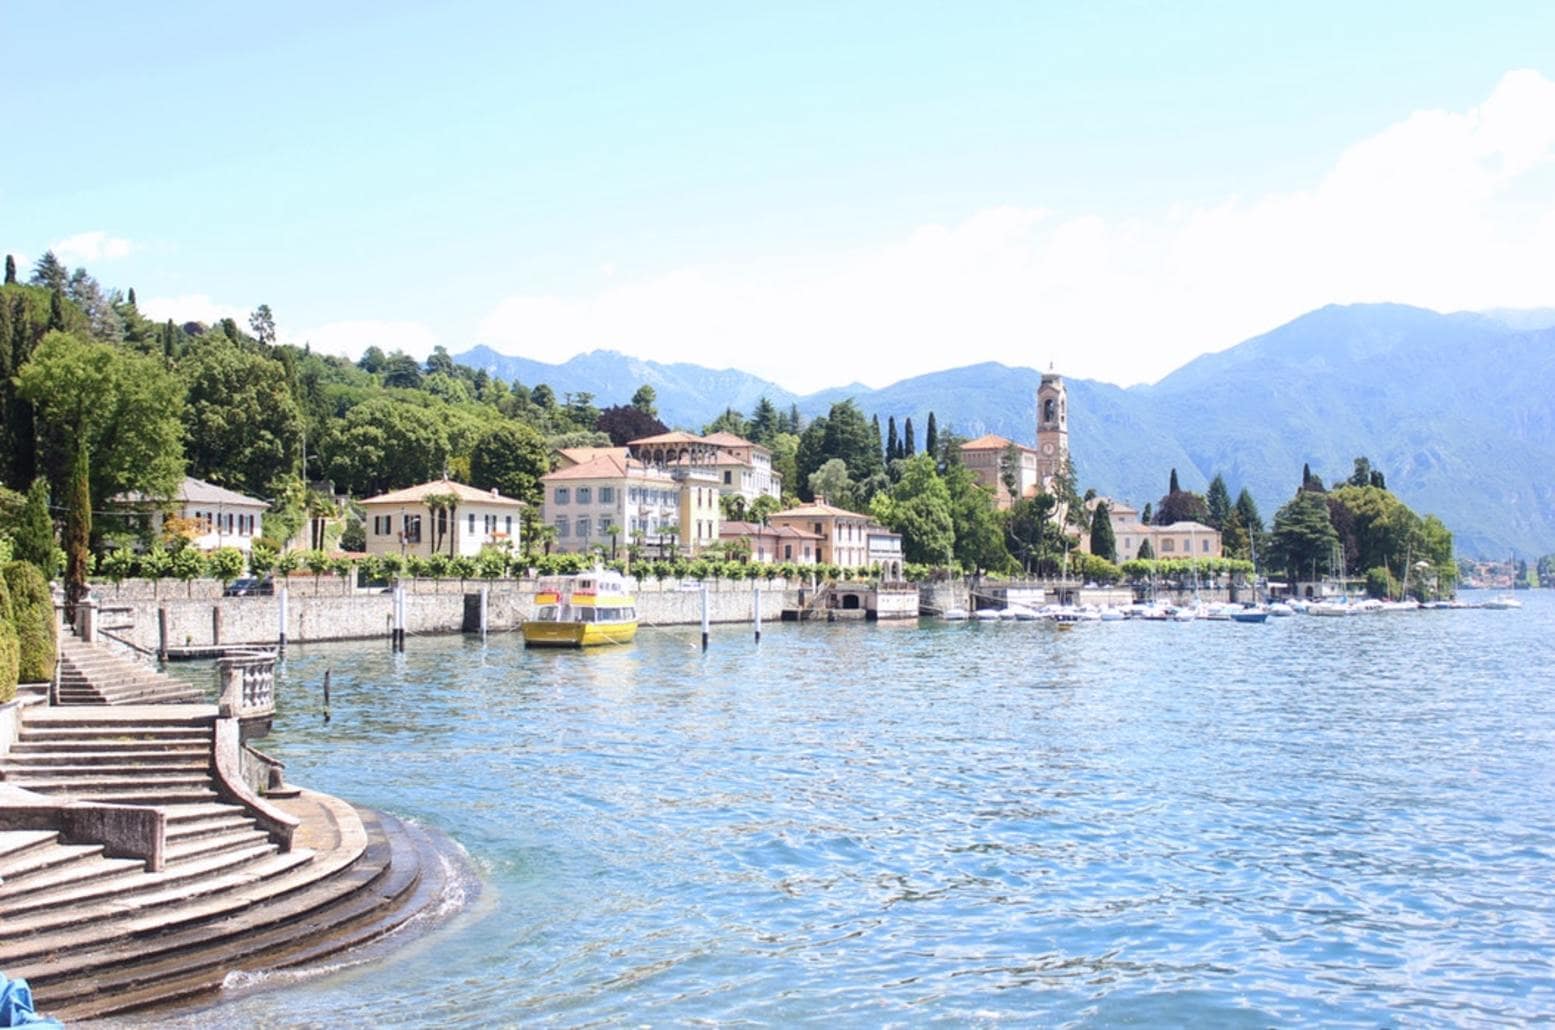 Urlaub an den italienischen Seen genießen!